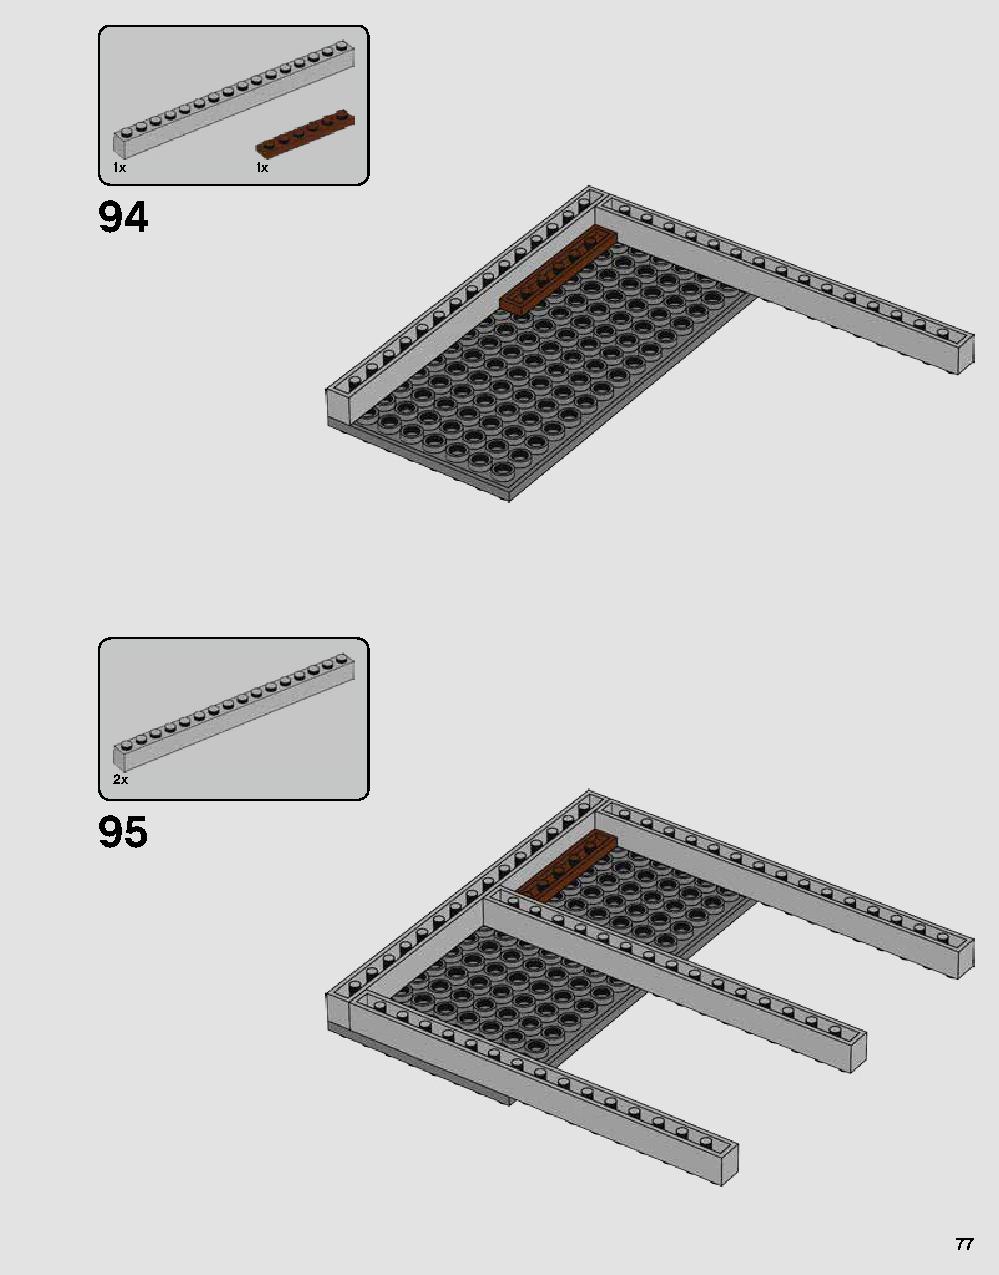 ダース・ベイダーの城 75251 レゴの商品情報 レゴの説明書・組立方法 77 page